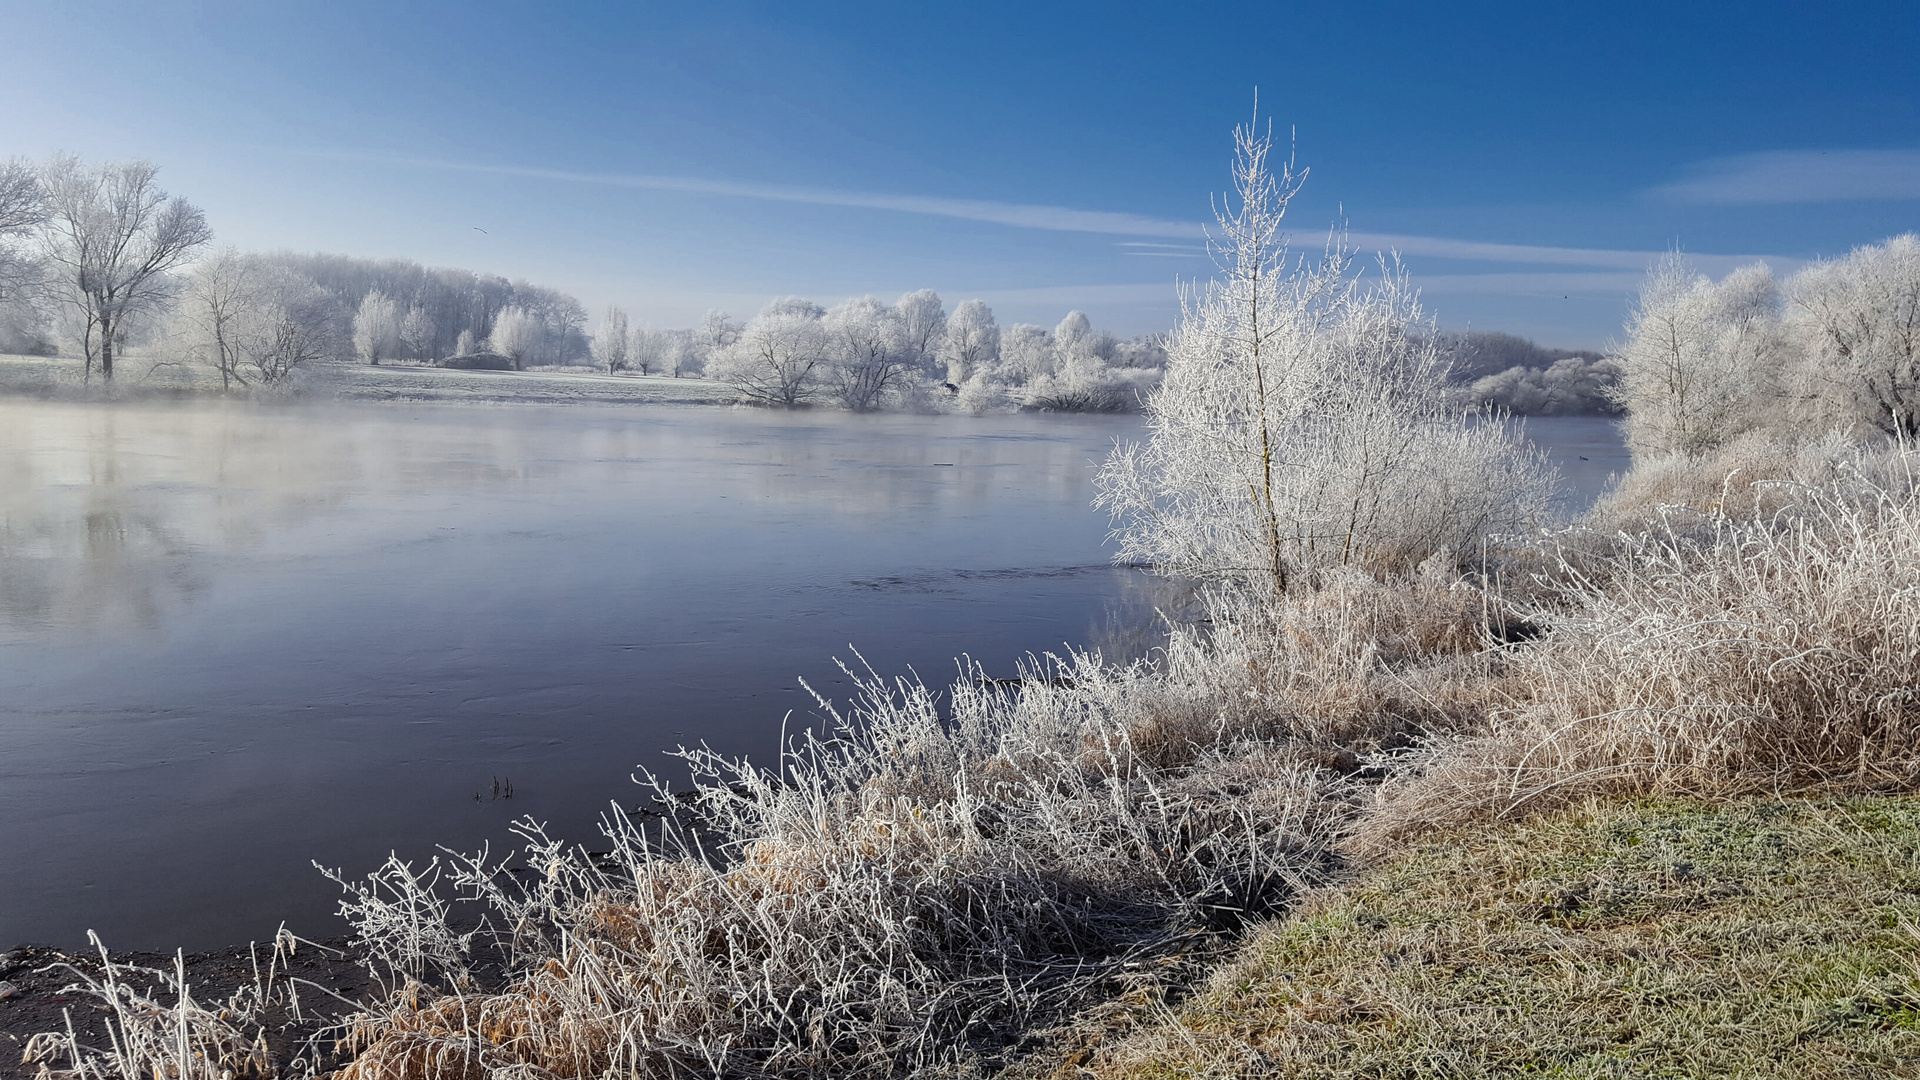 Winter an der Weser